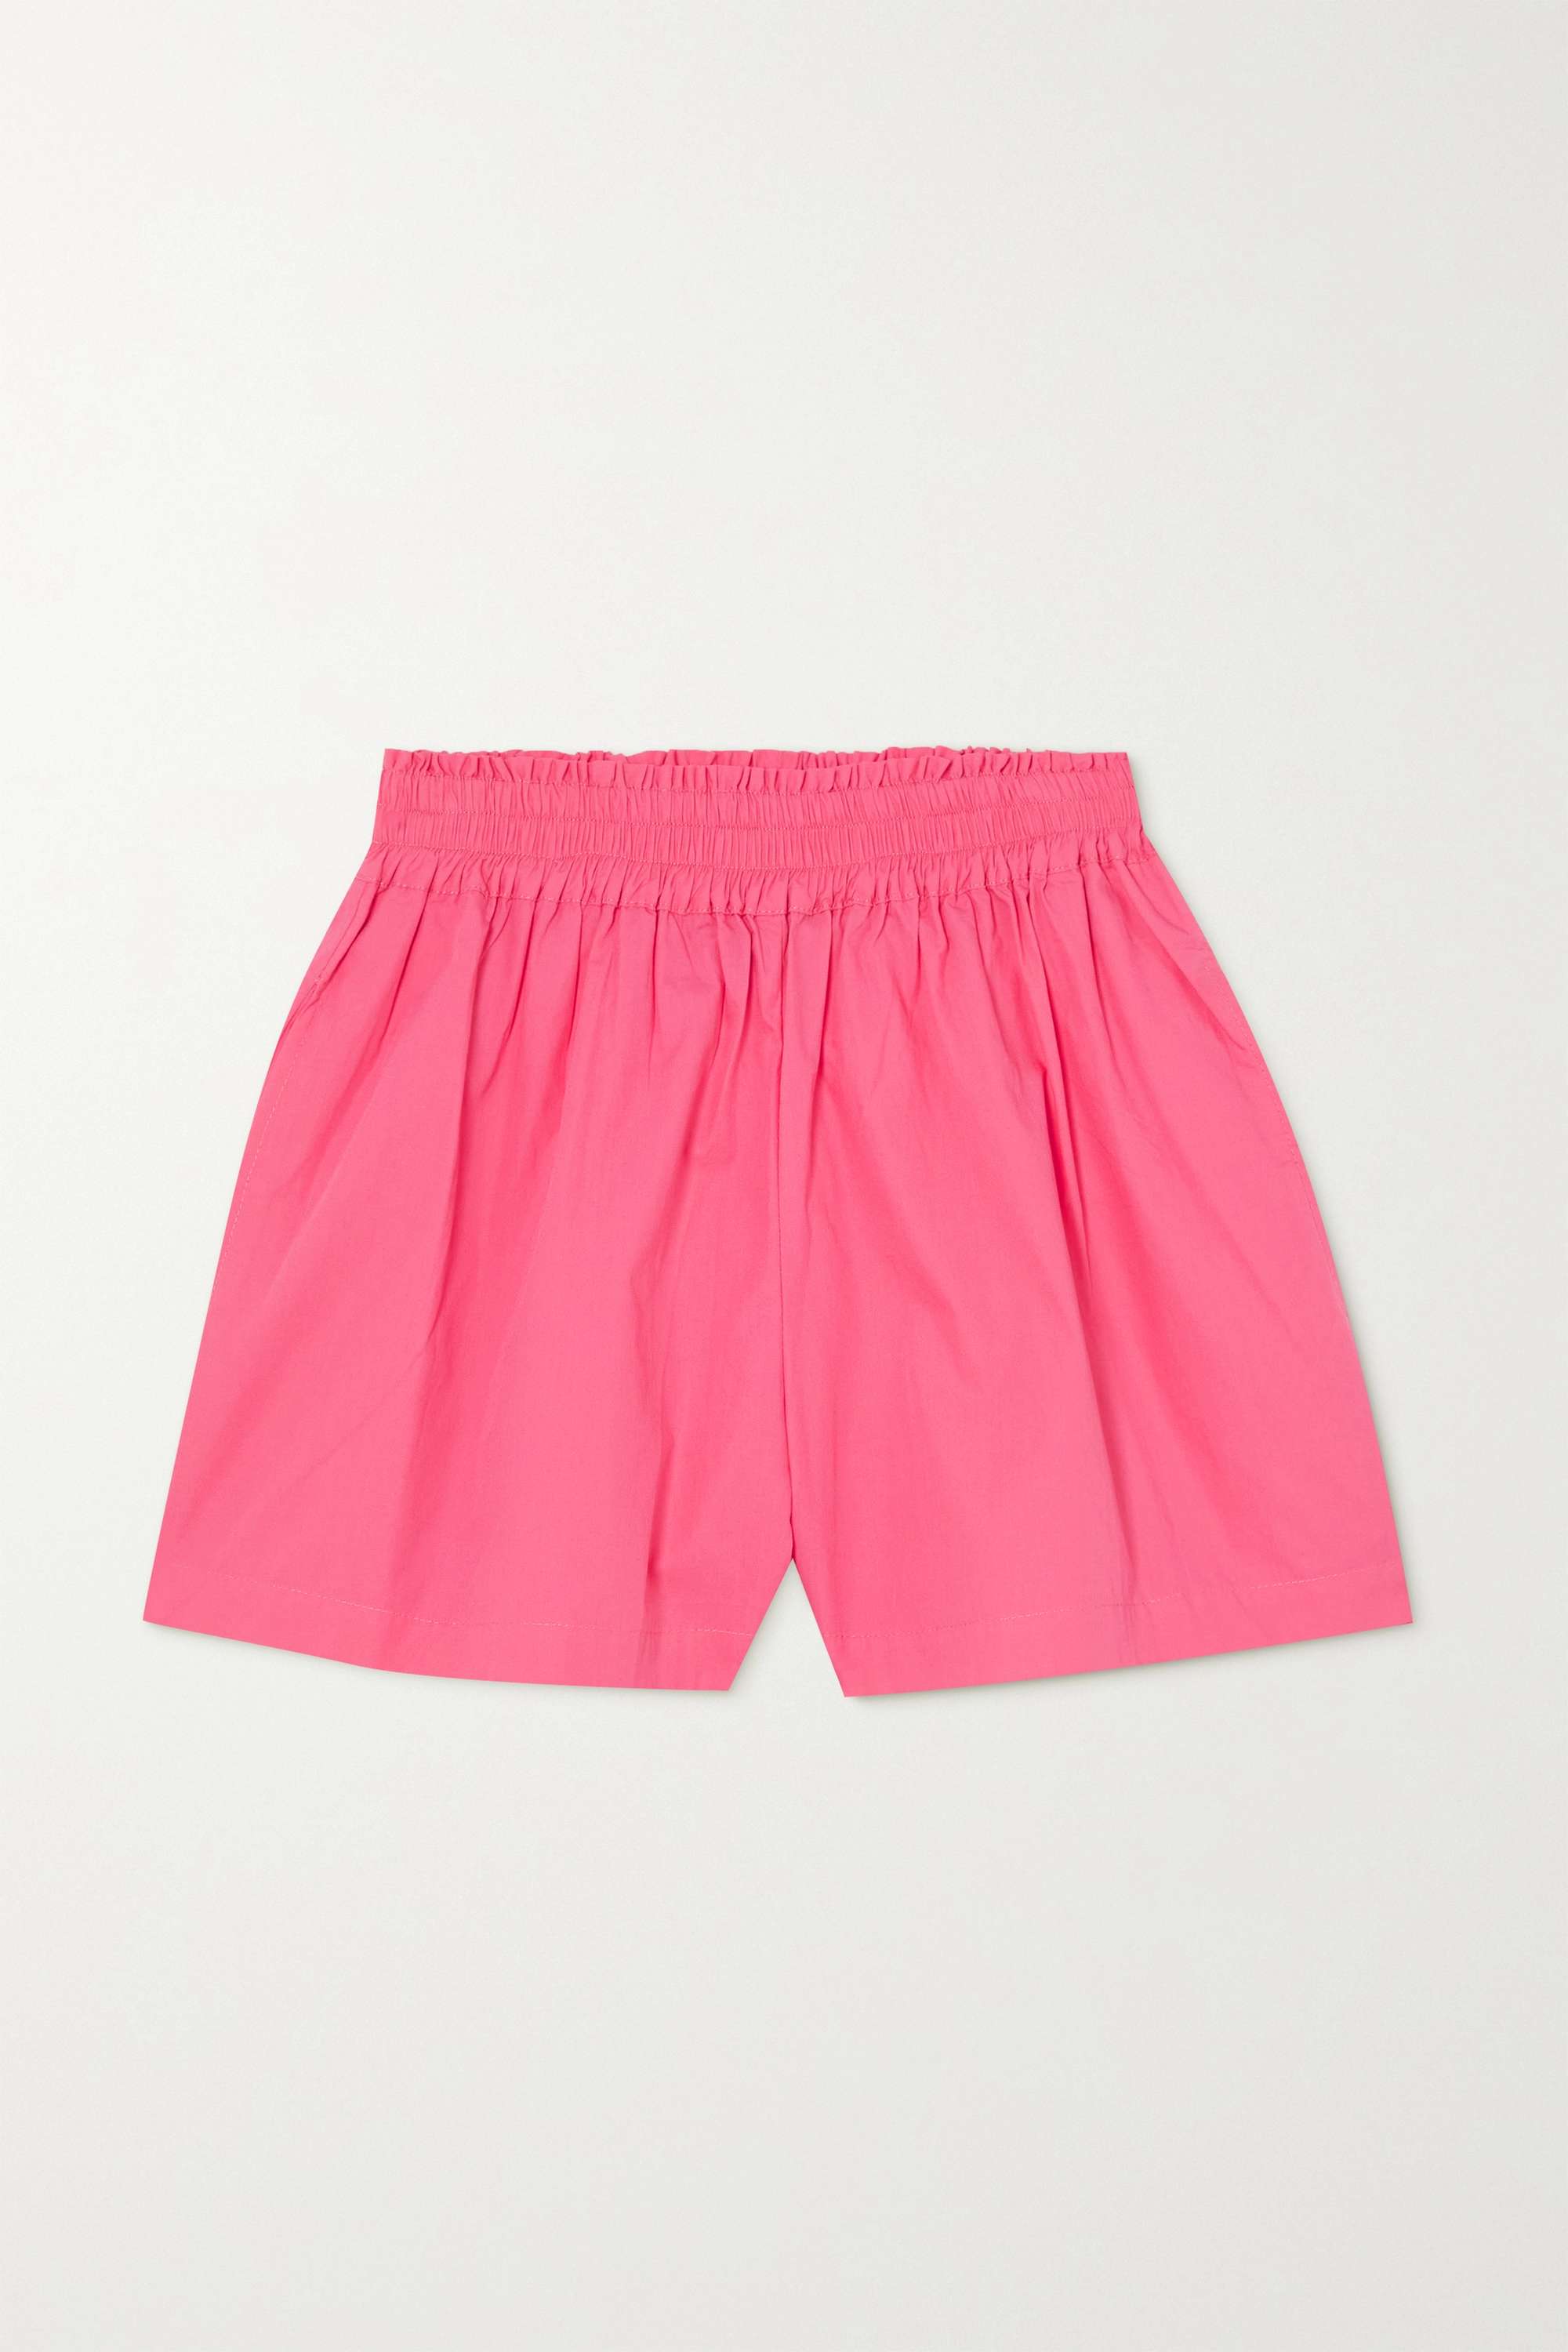 Faithfull the Brand + Elva cotton-poplin shorts